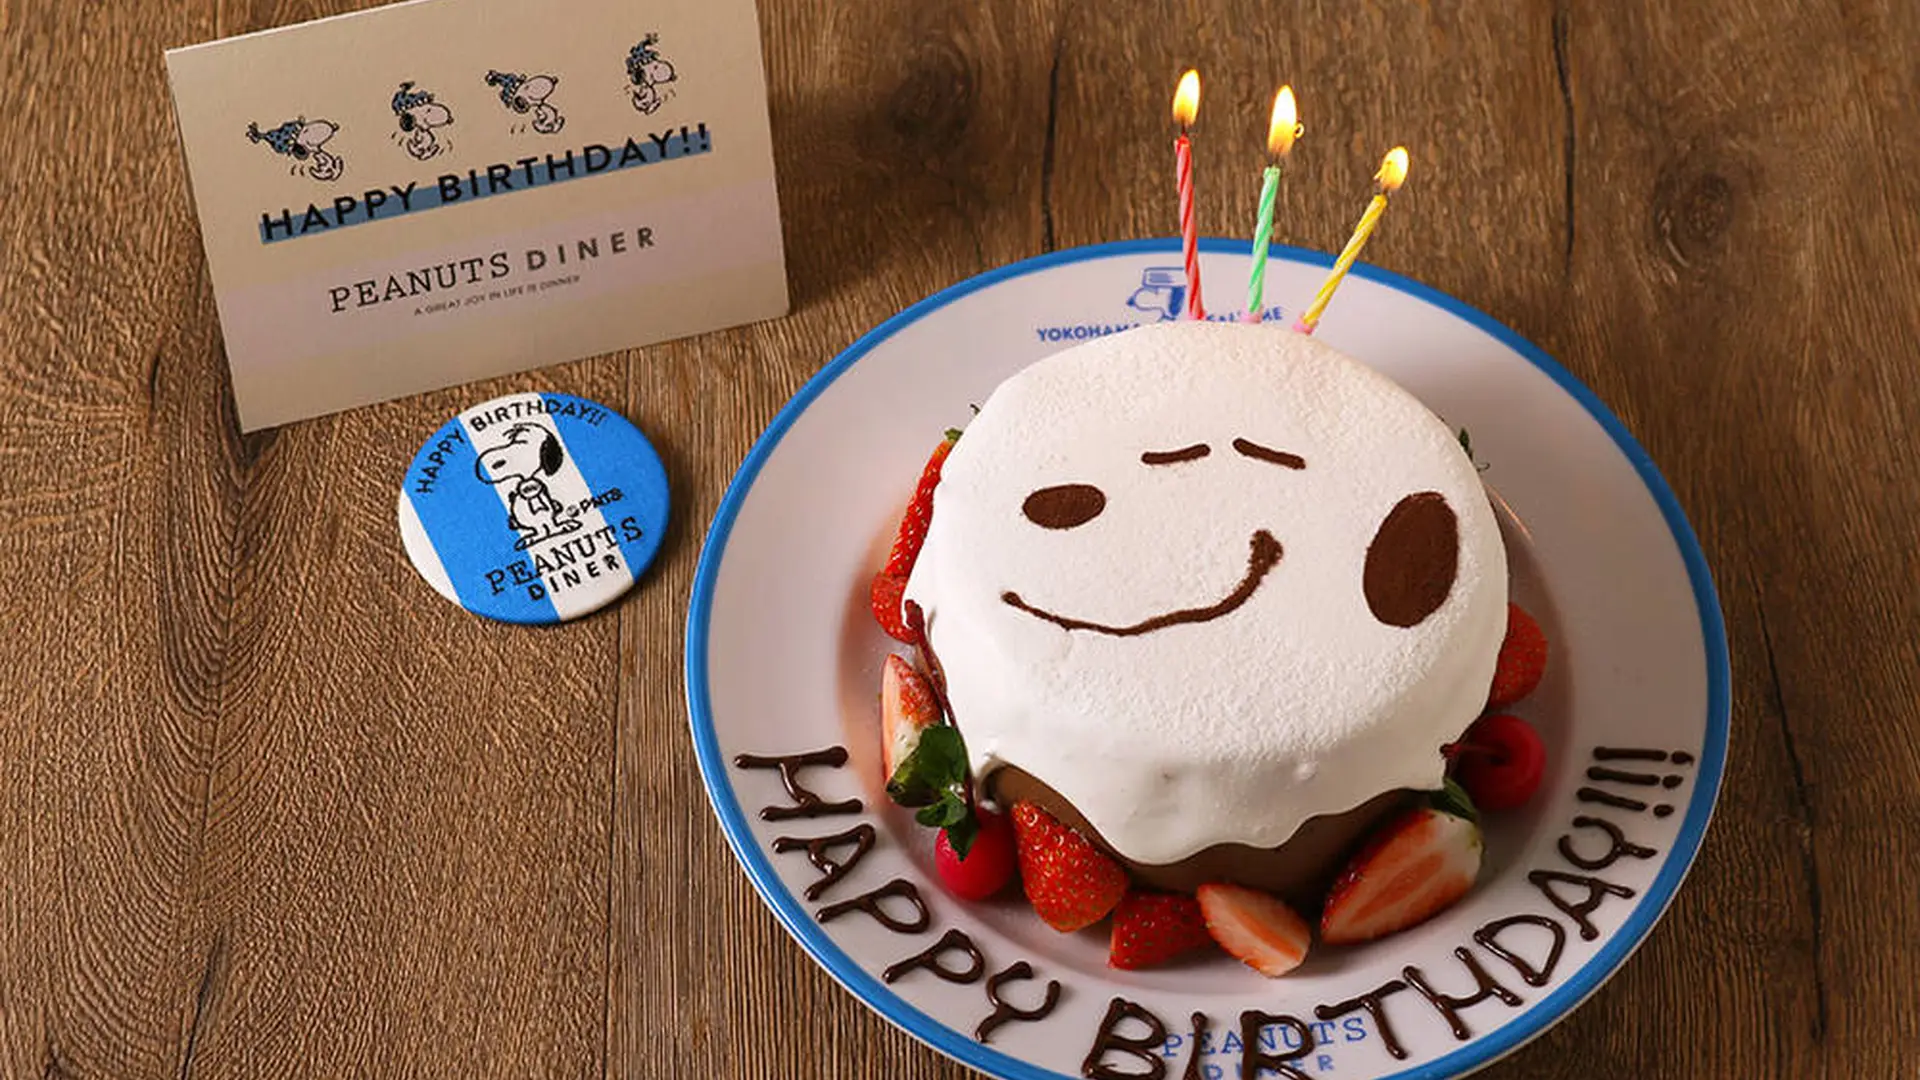 スヌーピーと一緒に誕生日をお祝いしよう Peanuts Diner 横浜 神戸のバースデーケーキに新デザインが登場 Holiday ホリデー